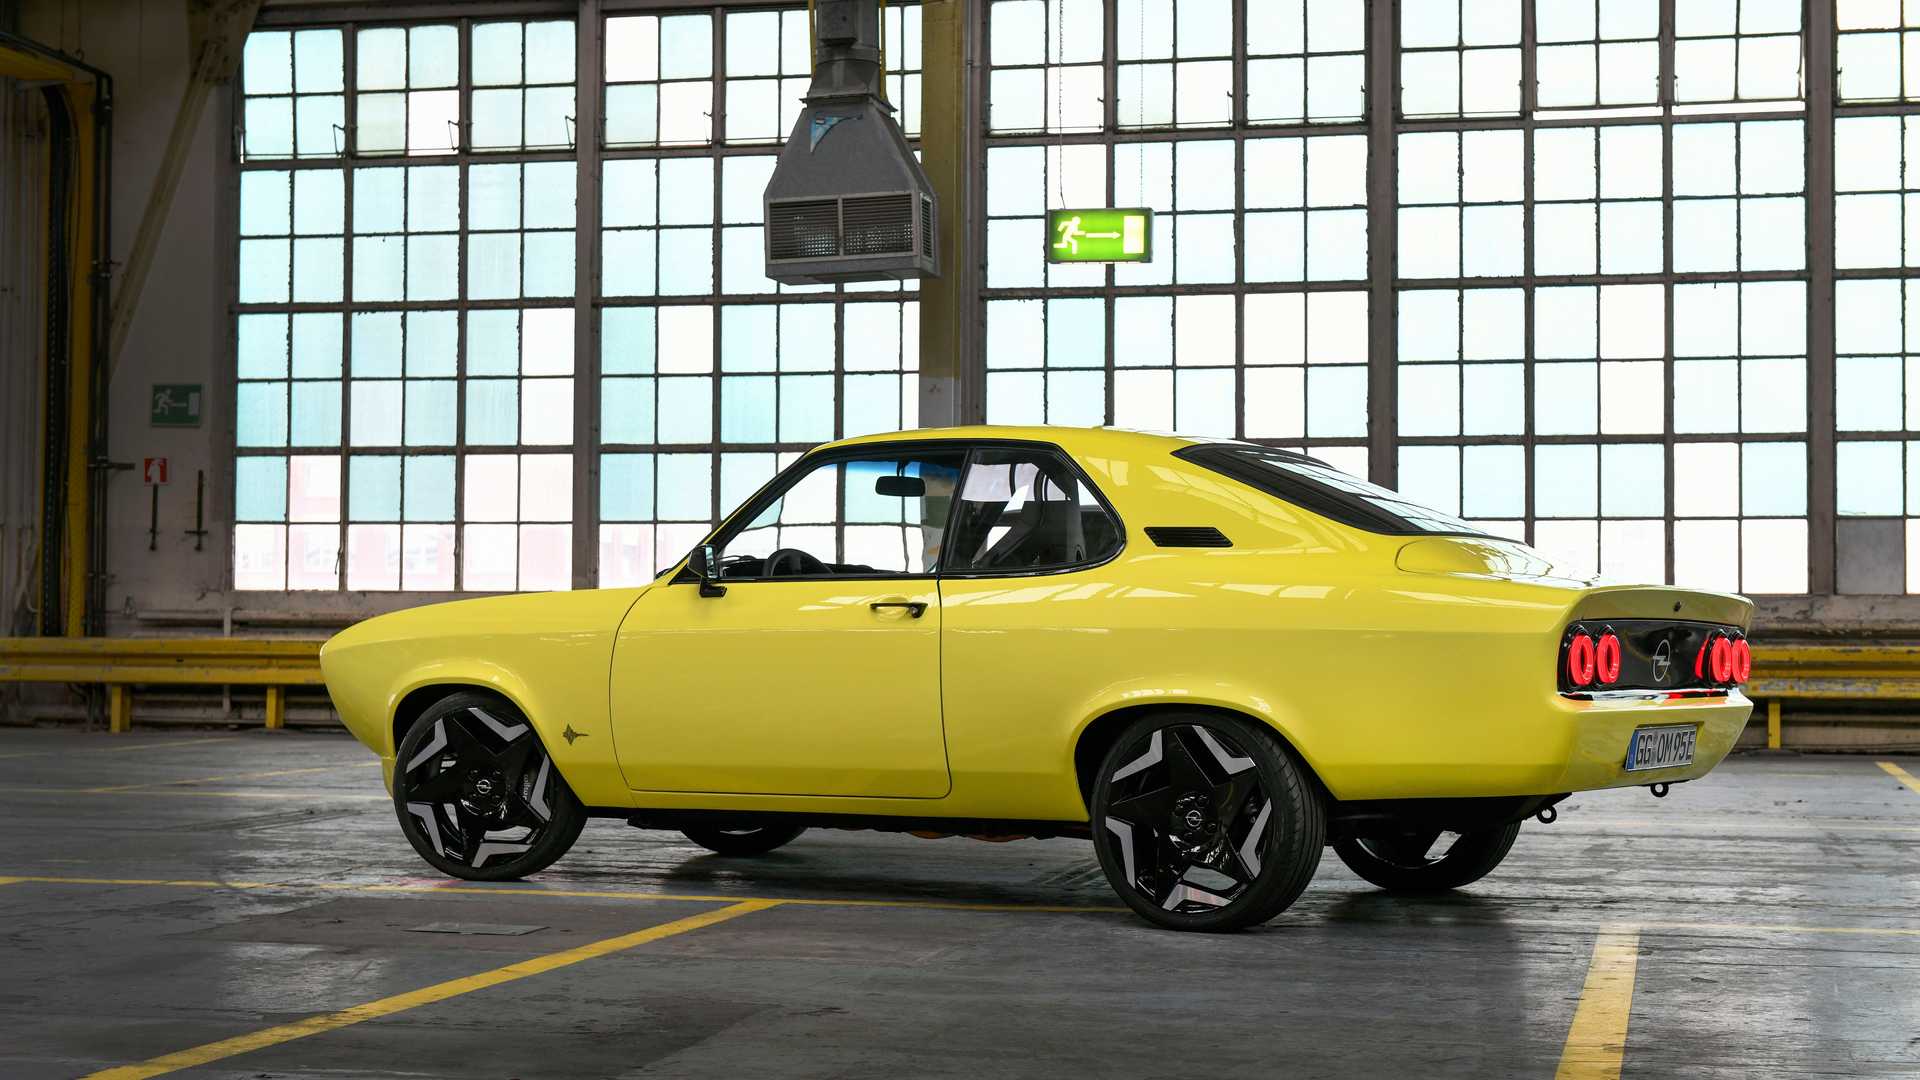 نمای جانبی اوپل مانتا جی اس ای الکترومود / Opel Manta GSe ElektroMOD زرد رنگ در پارکینگ